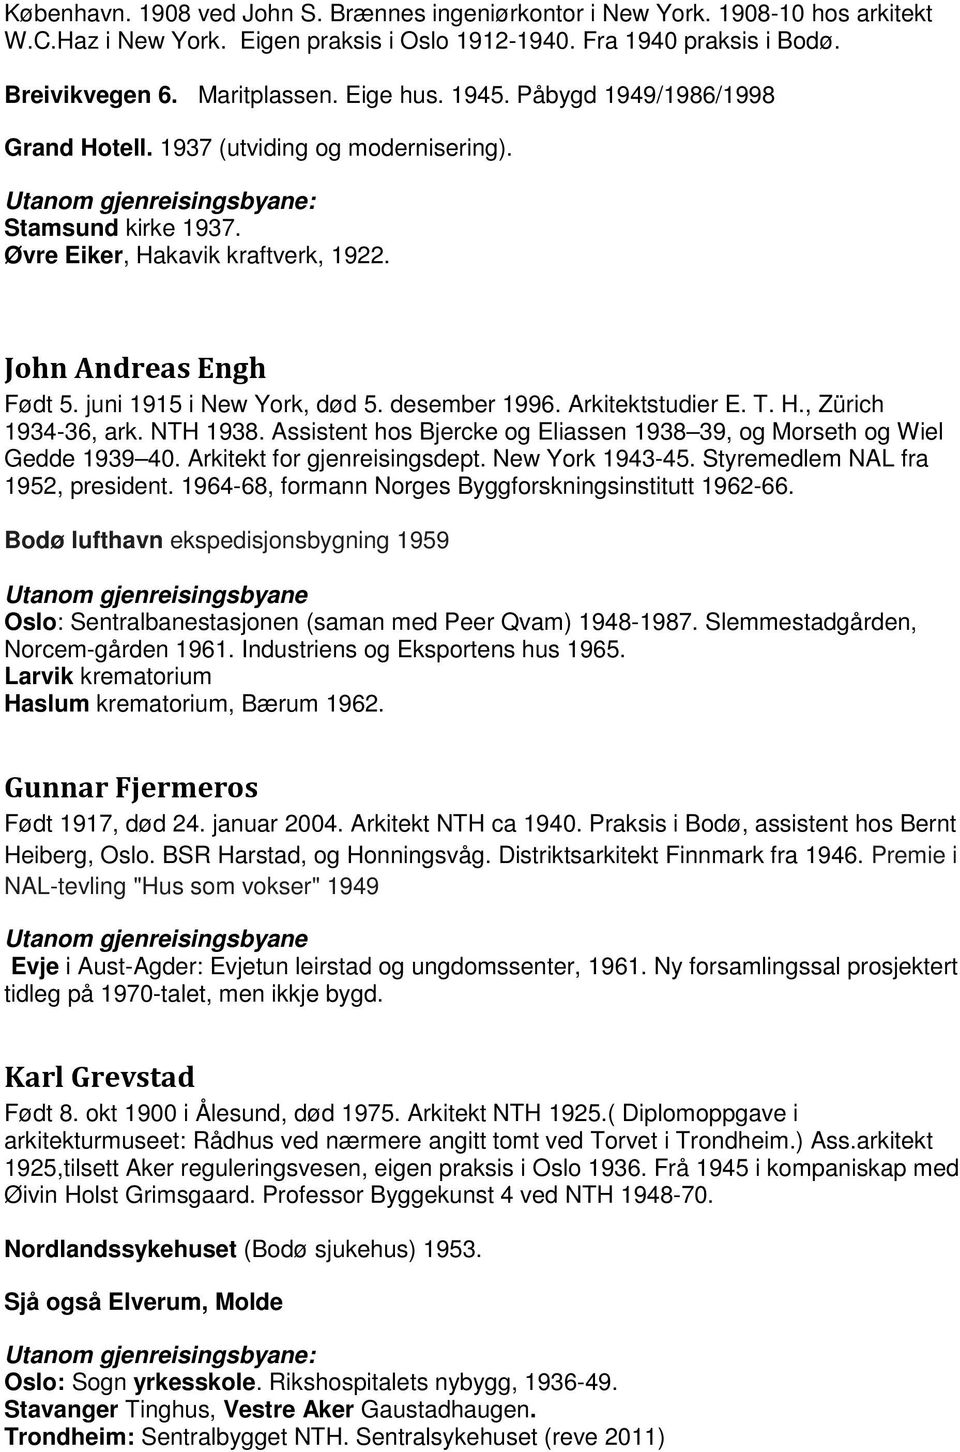 desember 1996. Arkitektstudier E. T. H., Zürich 1934-36, ark. NTH 1938. Assistent hos Bjercke og Eliassen 1938 39, og Morseth og Wiel Gedde 1939 40. Arkitekt for gjenreisingsdept. New York 1943-45.